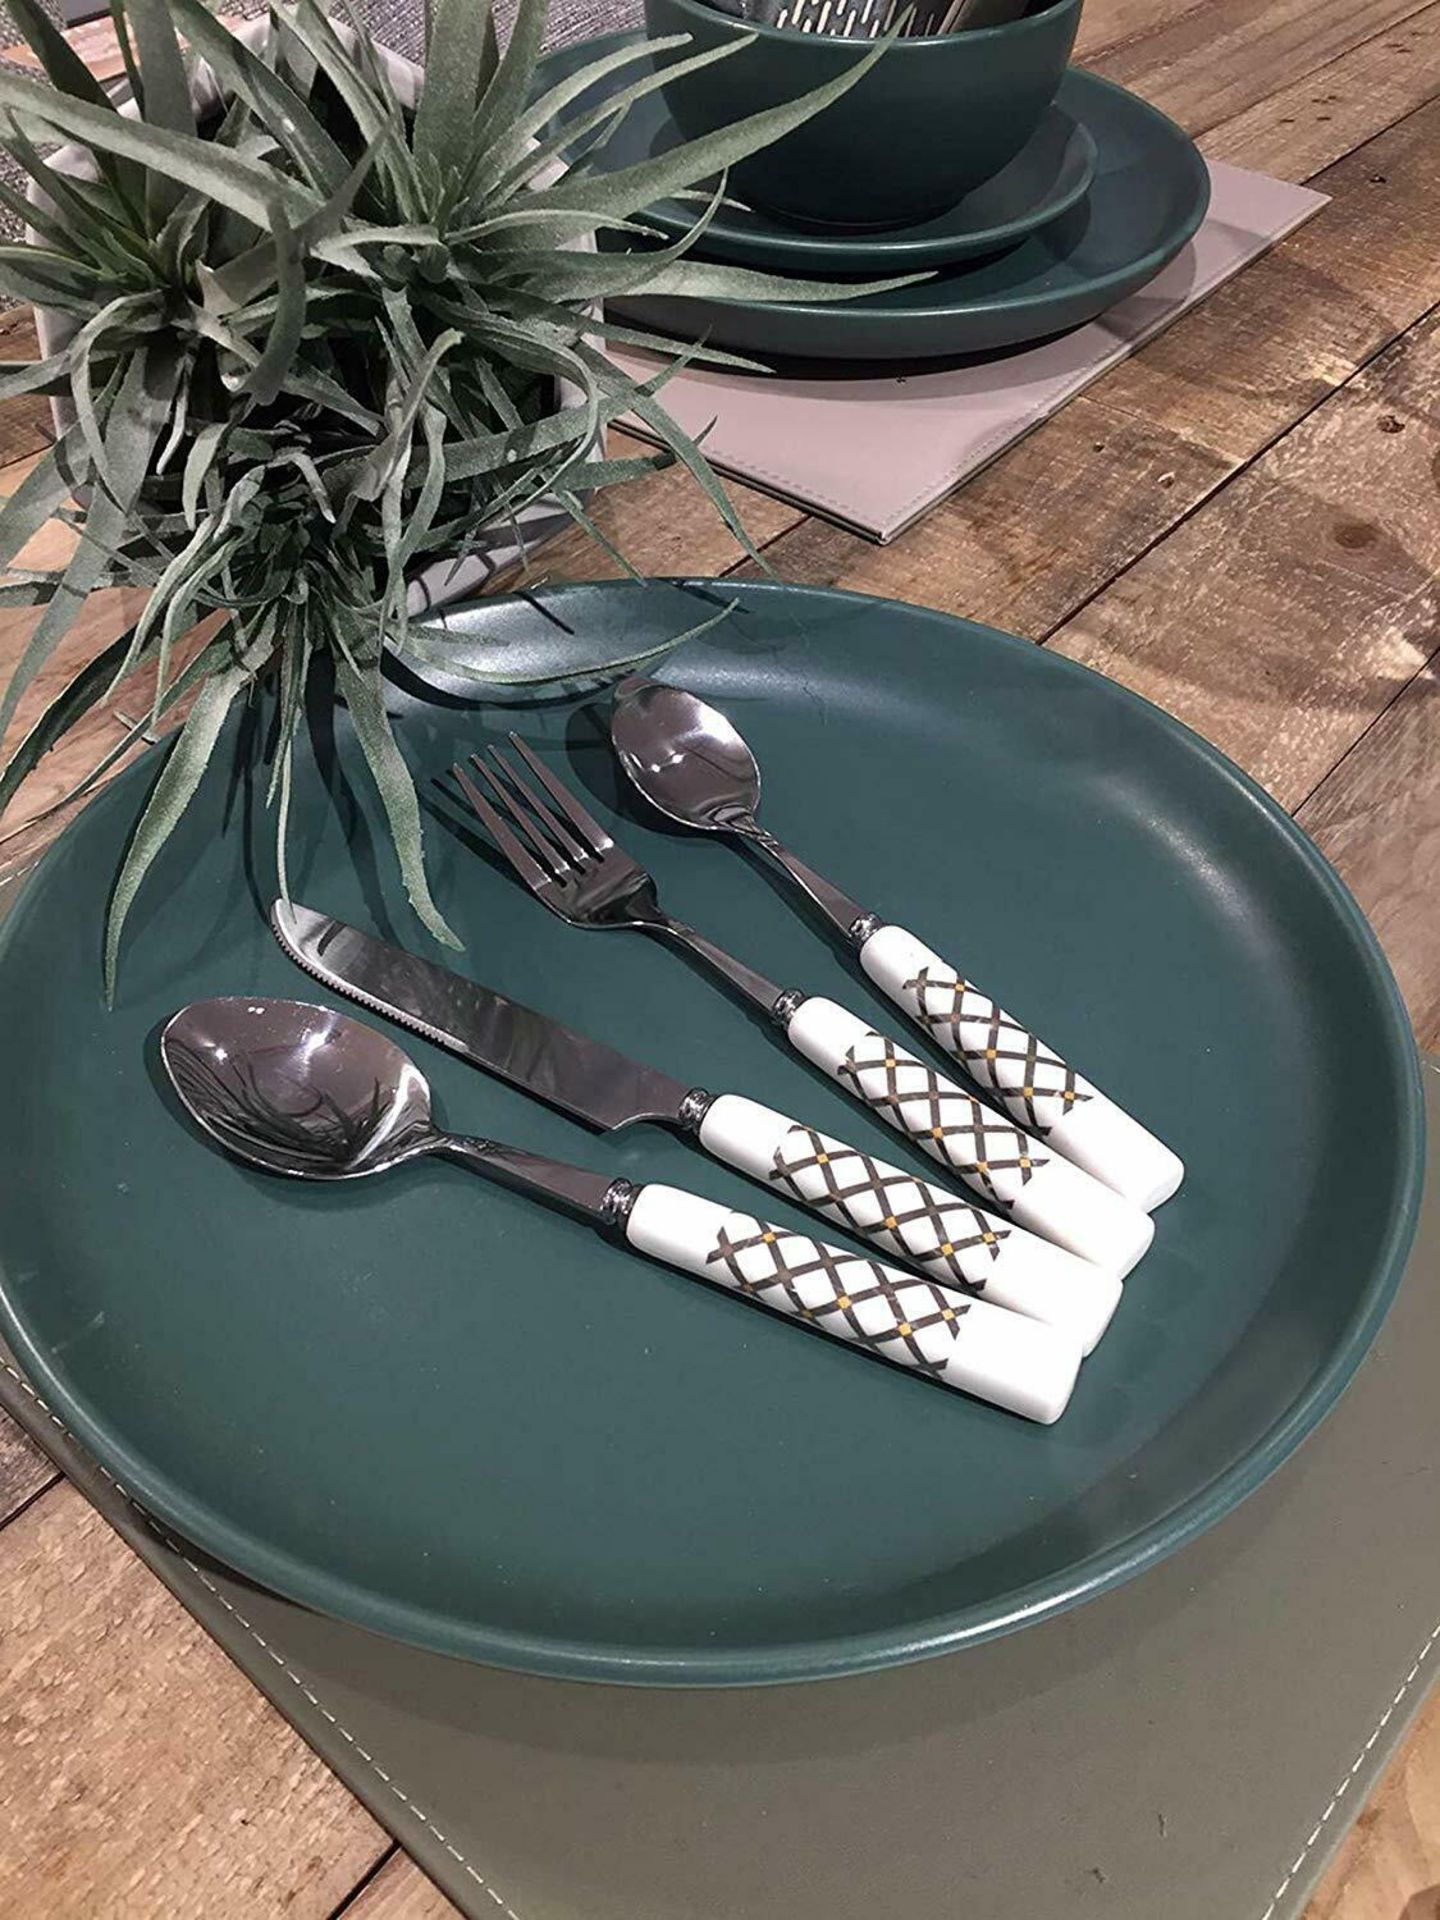 LENKON Cutlery Set,Tableware 24 Piece Stainless Steel Flatware,Silverware Set - Image 4 of 7